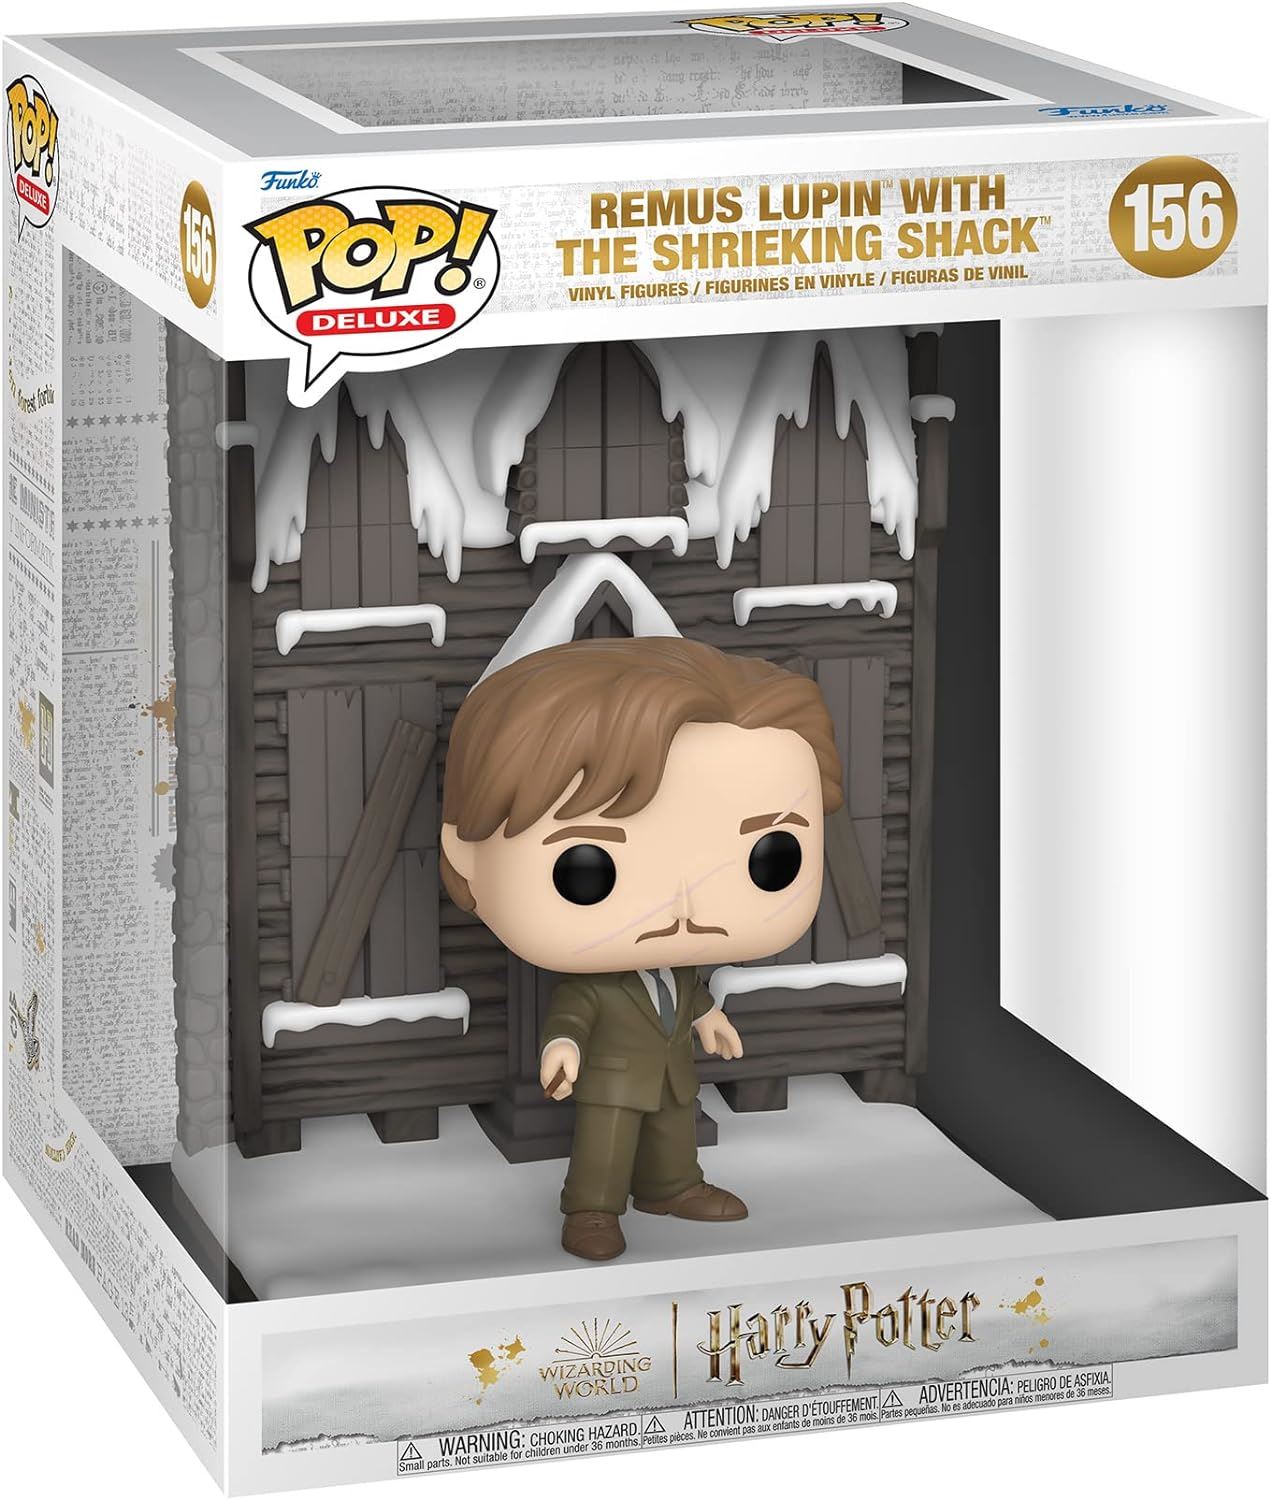 Funko POP! Deluxe Harry Potter Lupin Shrieking Shack #156